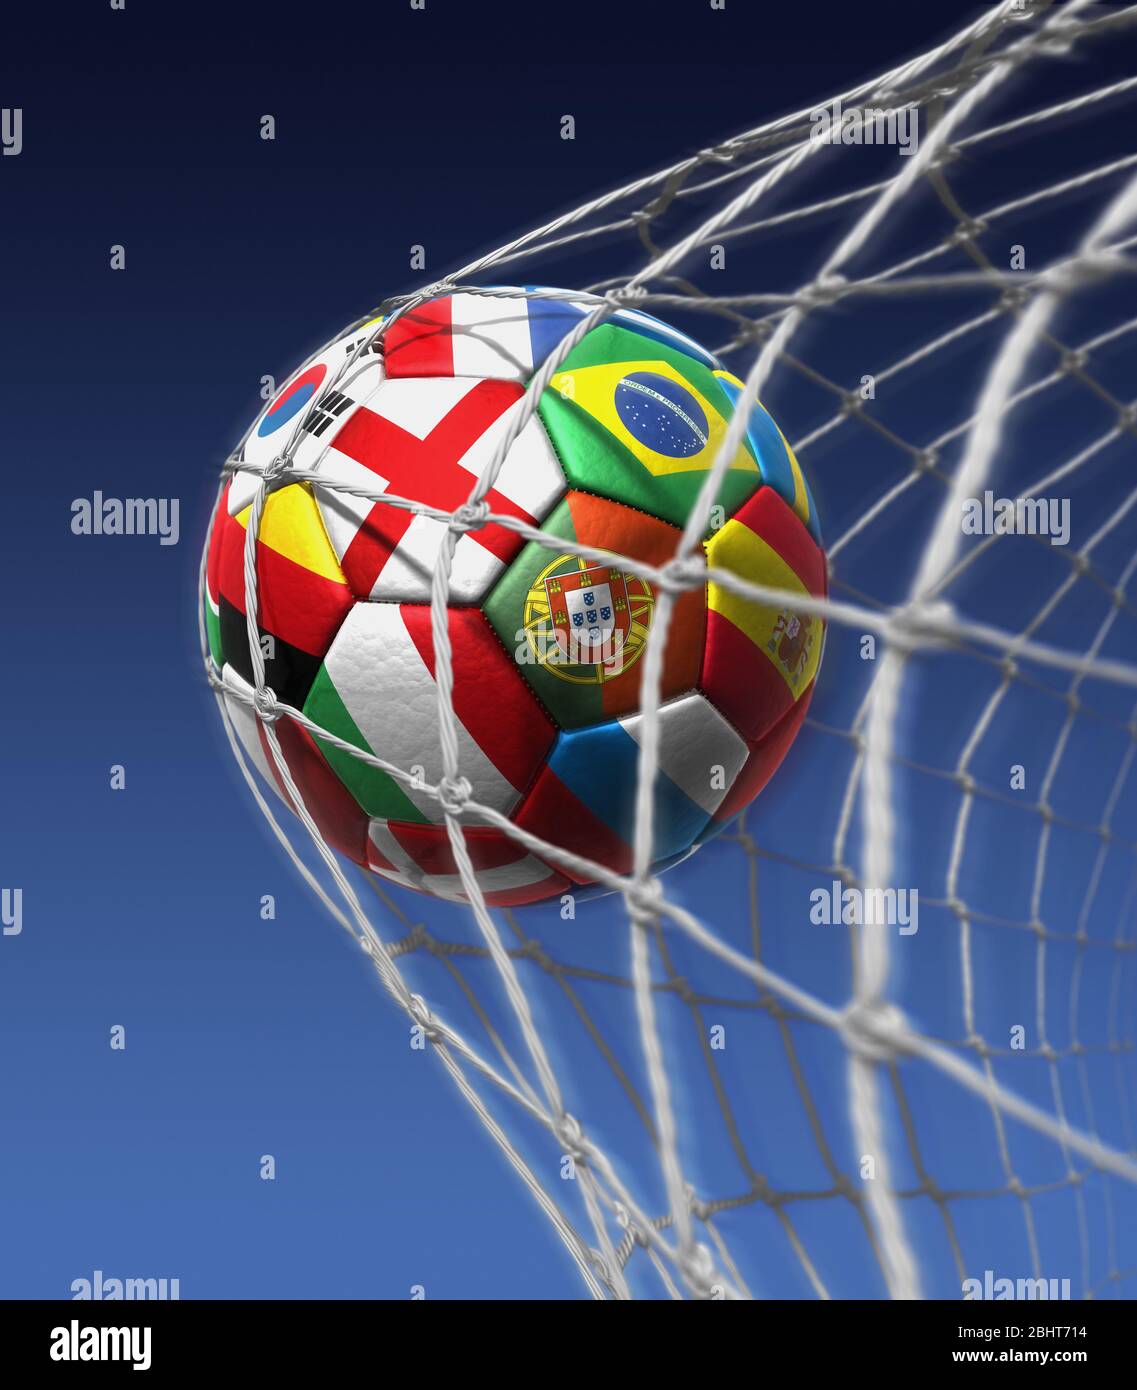 Ziel. Fußball im hinteren Teil des Netzes. Gewinnen, Fußball. Erfolgreich. International, Weltmeisterschaft, uefa Stockfoto